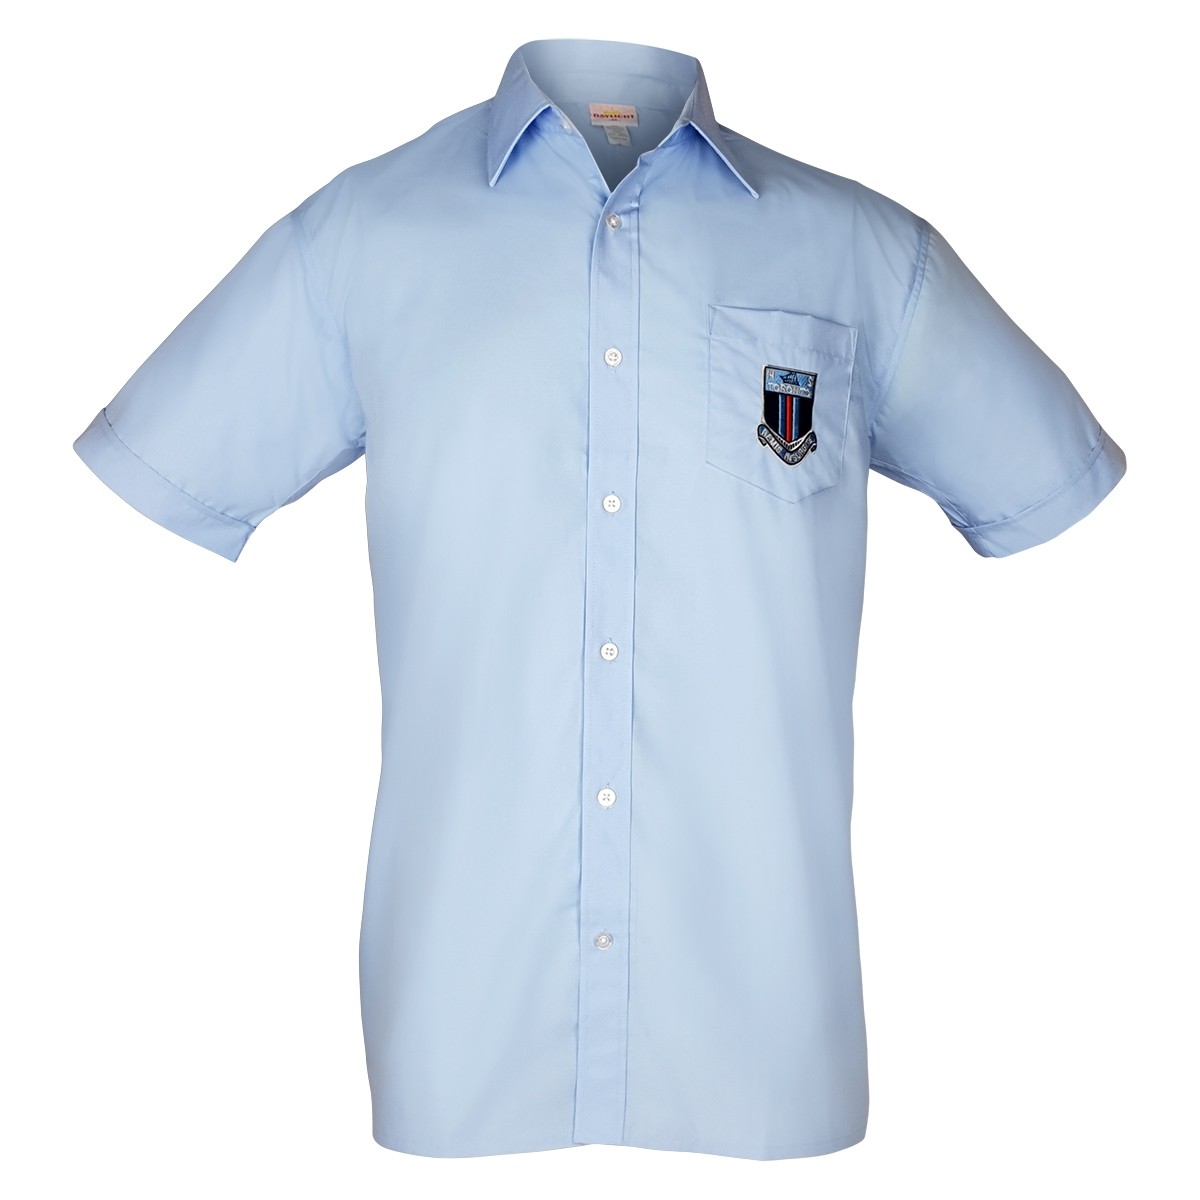 Shirt Jnr Blue - School Locker